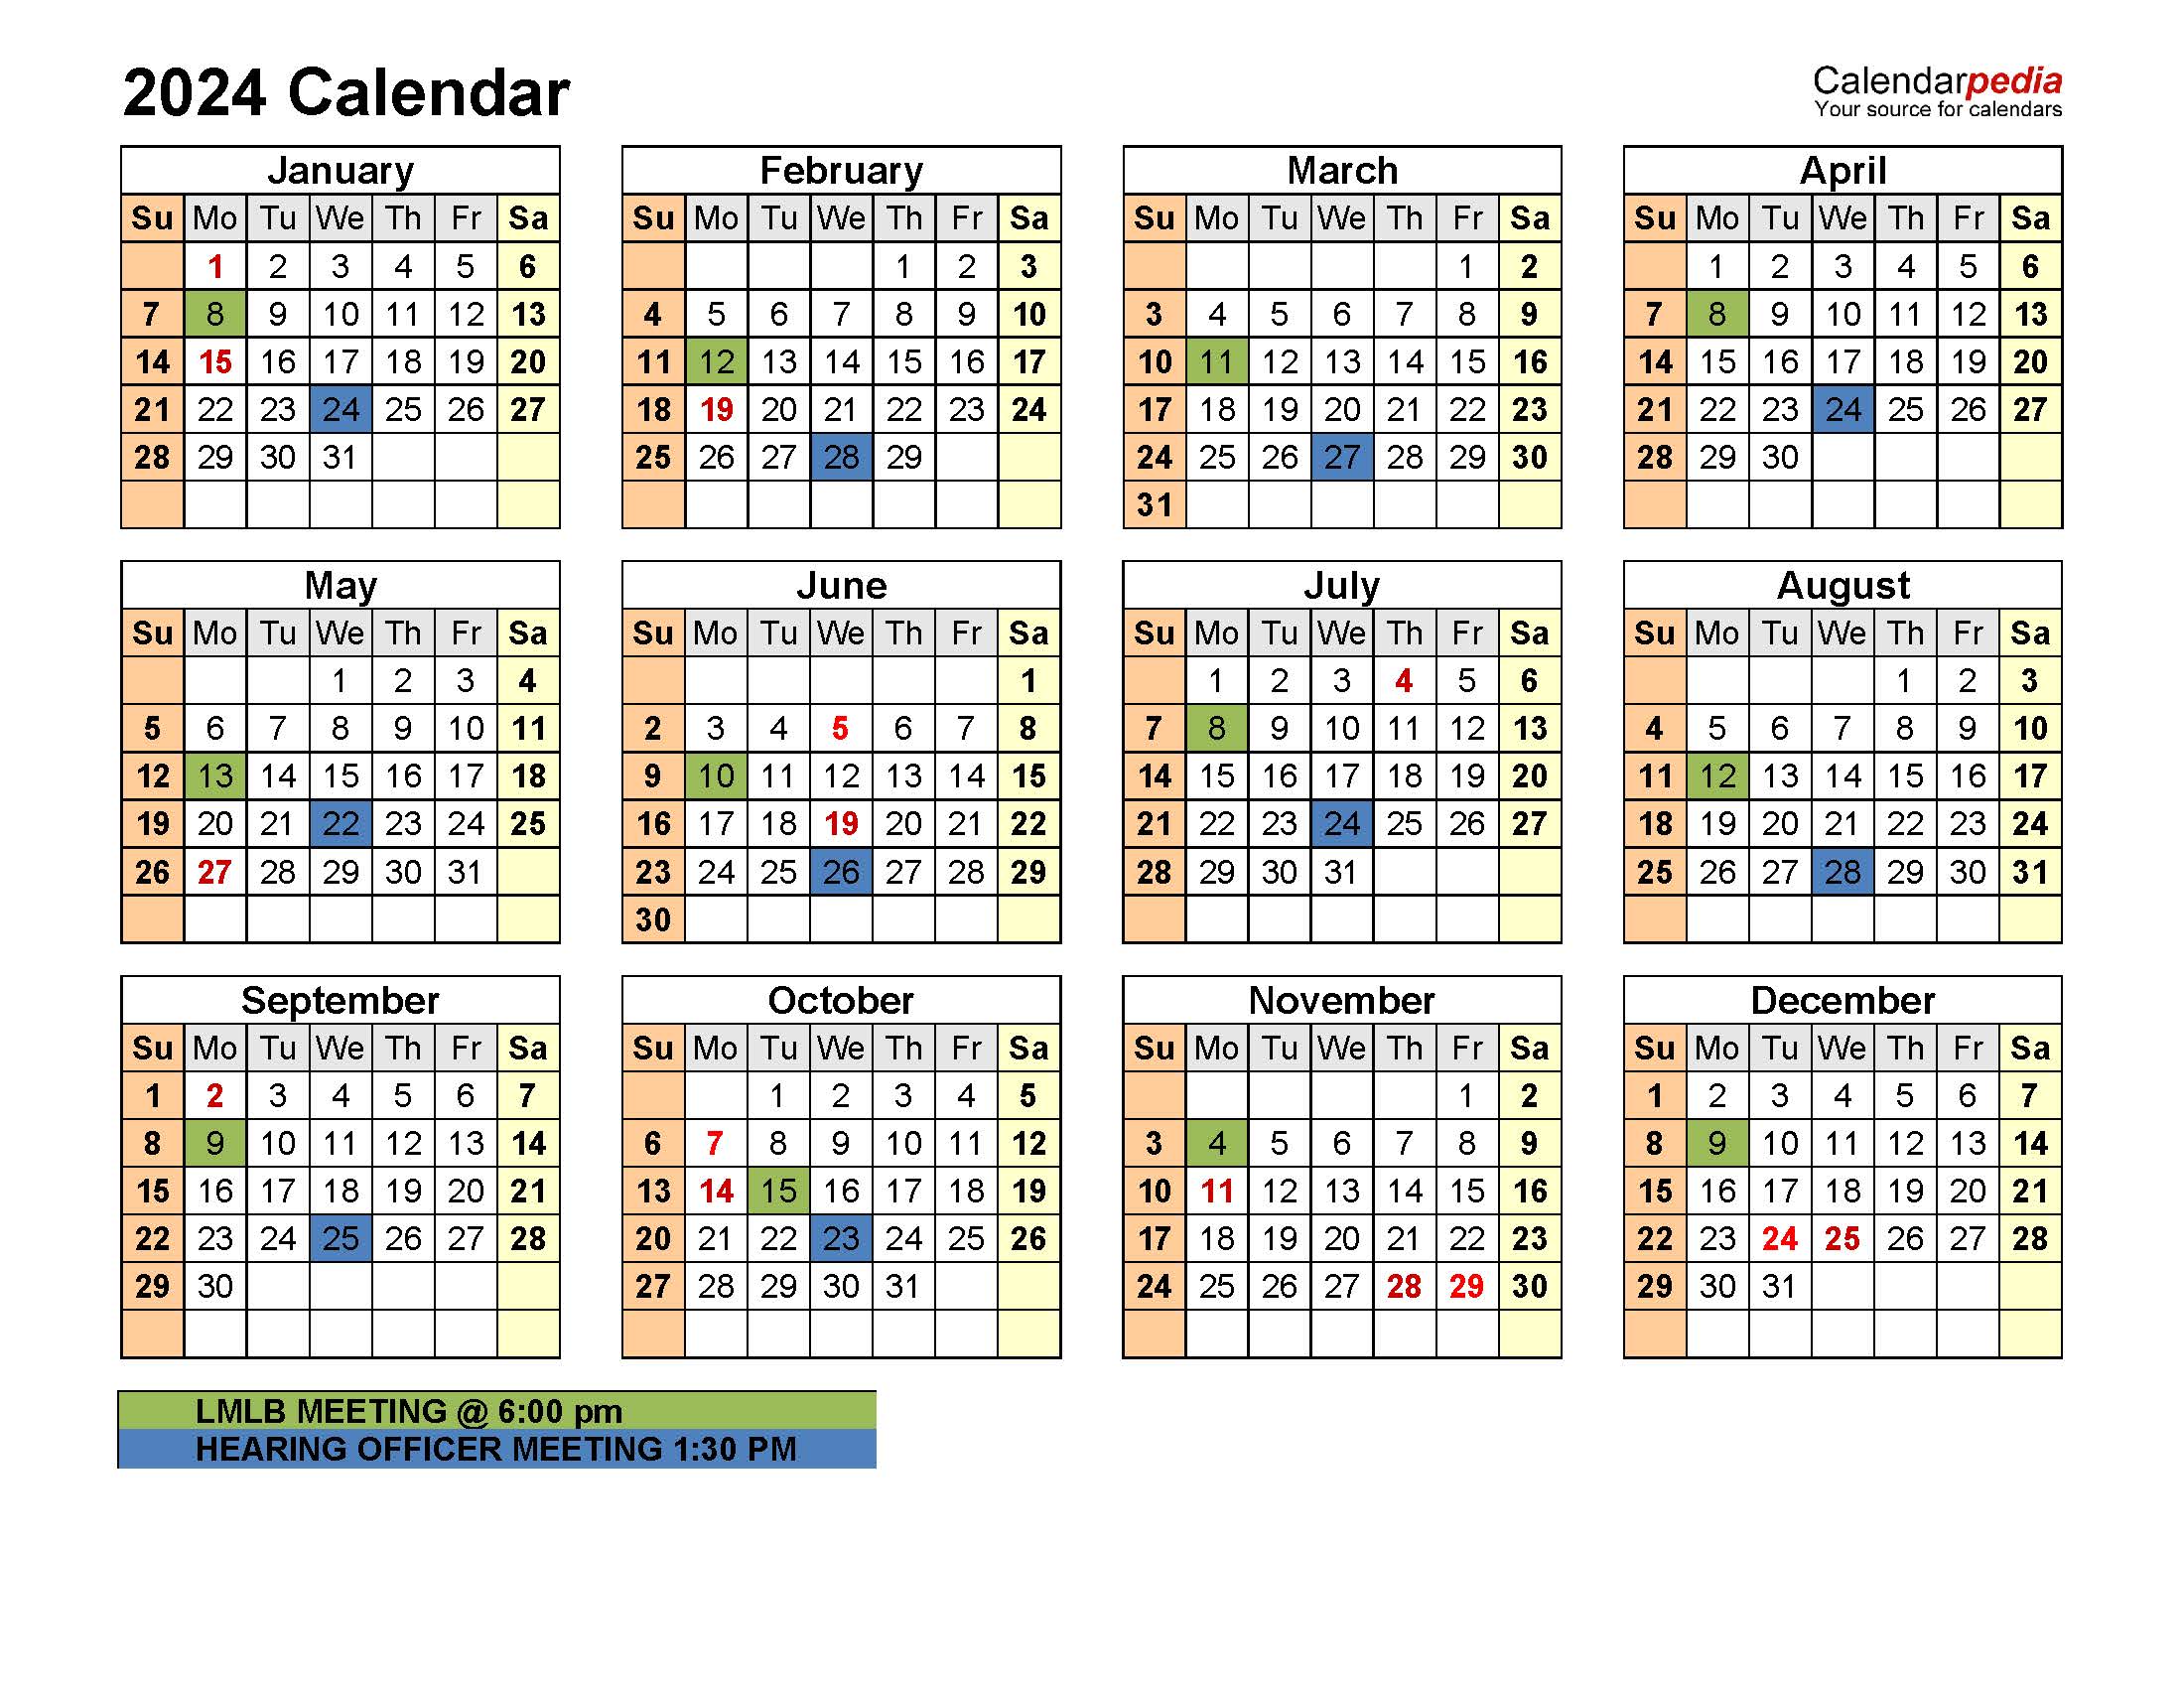 2024_Calendar_LMLB